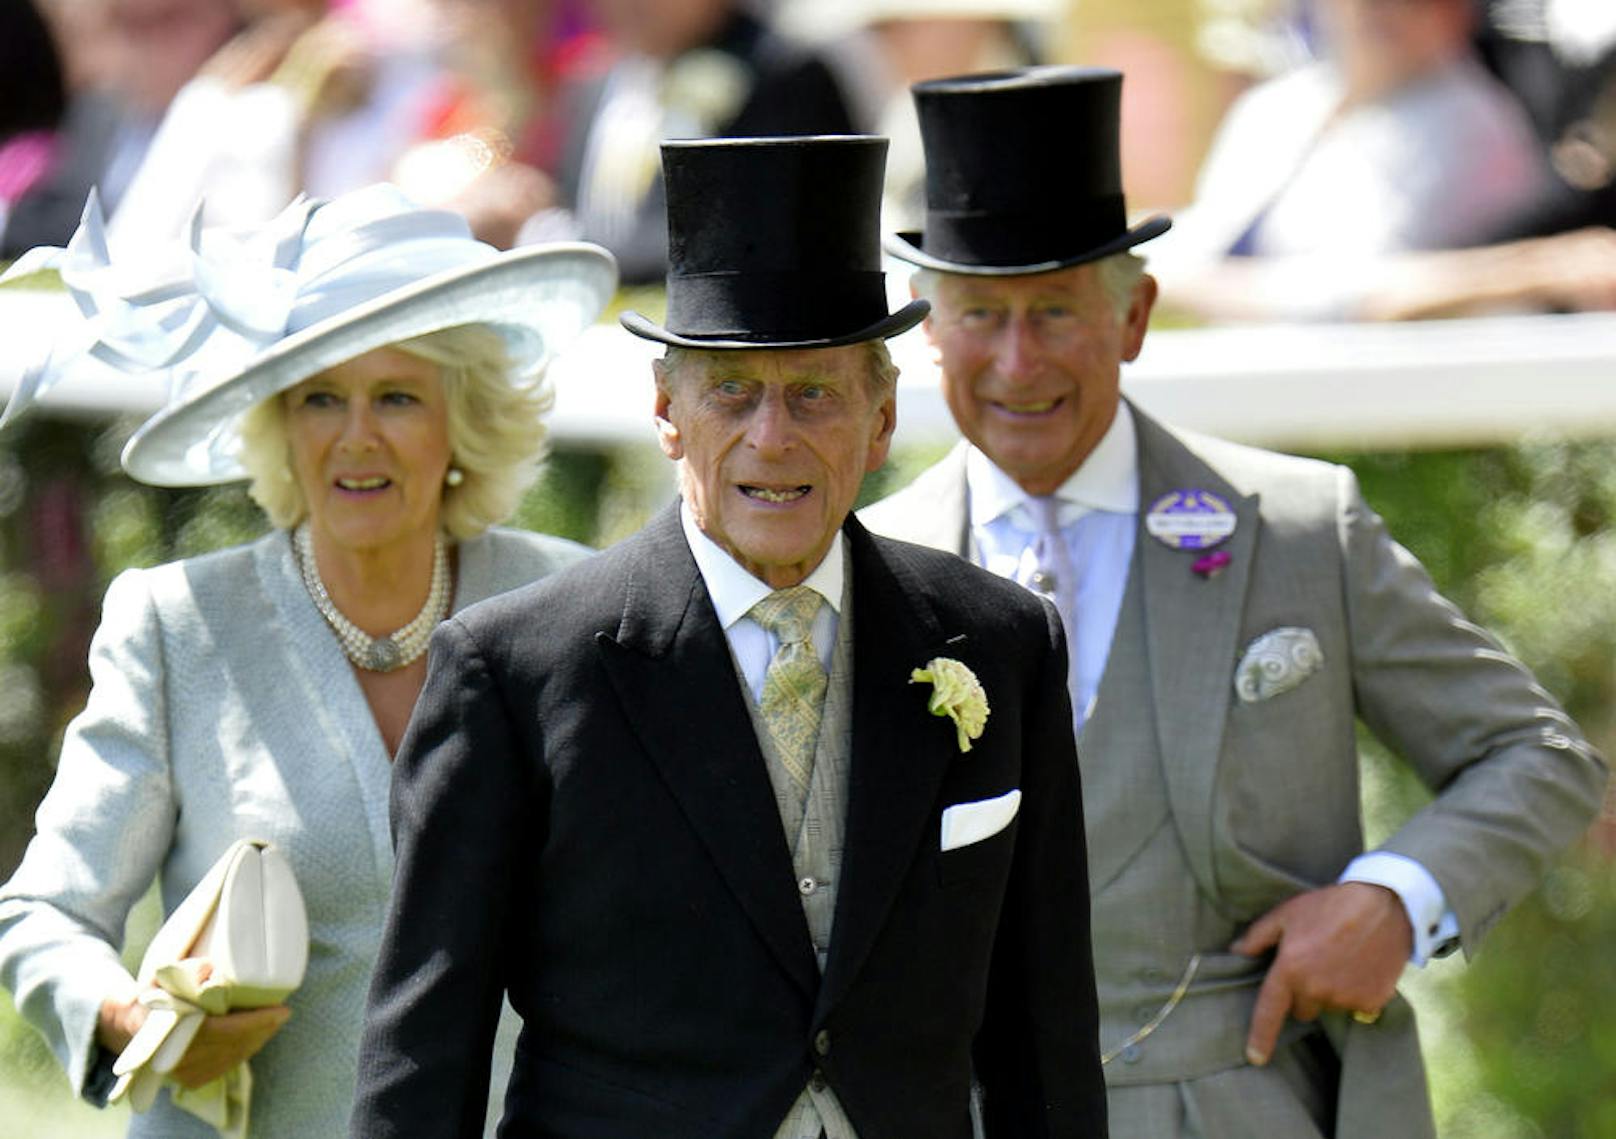 Bei einem Besuch auf der Isle of Lewis (Schottland) in 2002 sprach er eine junge Polizistin an, die eine schusssichere Weste trug: "Du schaust aus wie eine Selbstmordattentäterin" Bild: Camilla, die Duchess of Cornwall und Prinz Charles, der Prince of Wales hinter seinem Vater Prinz Philip